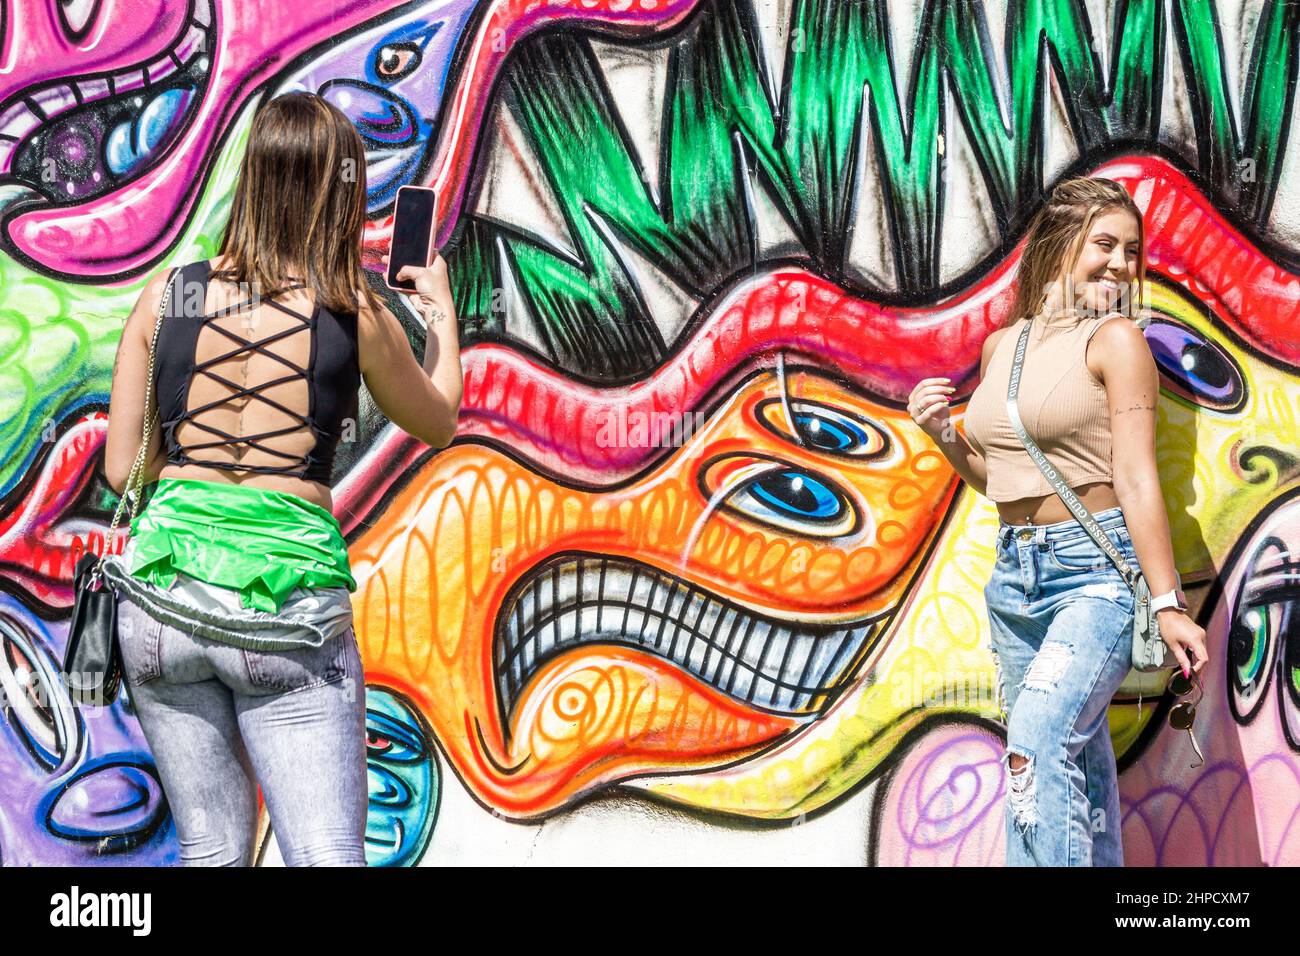 Miami Florida Wynwood Art District art mur visiteurs femmes amis posant adolescent adolescents adolescent adolescents, jeunesse culture amis adolescent, résidents filles, prendre des photos Banque D'Images